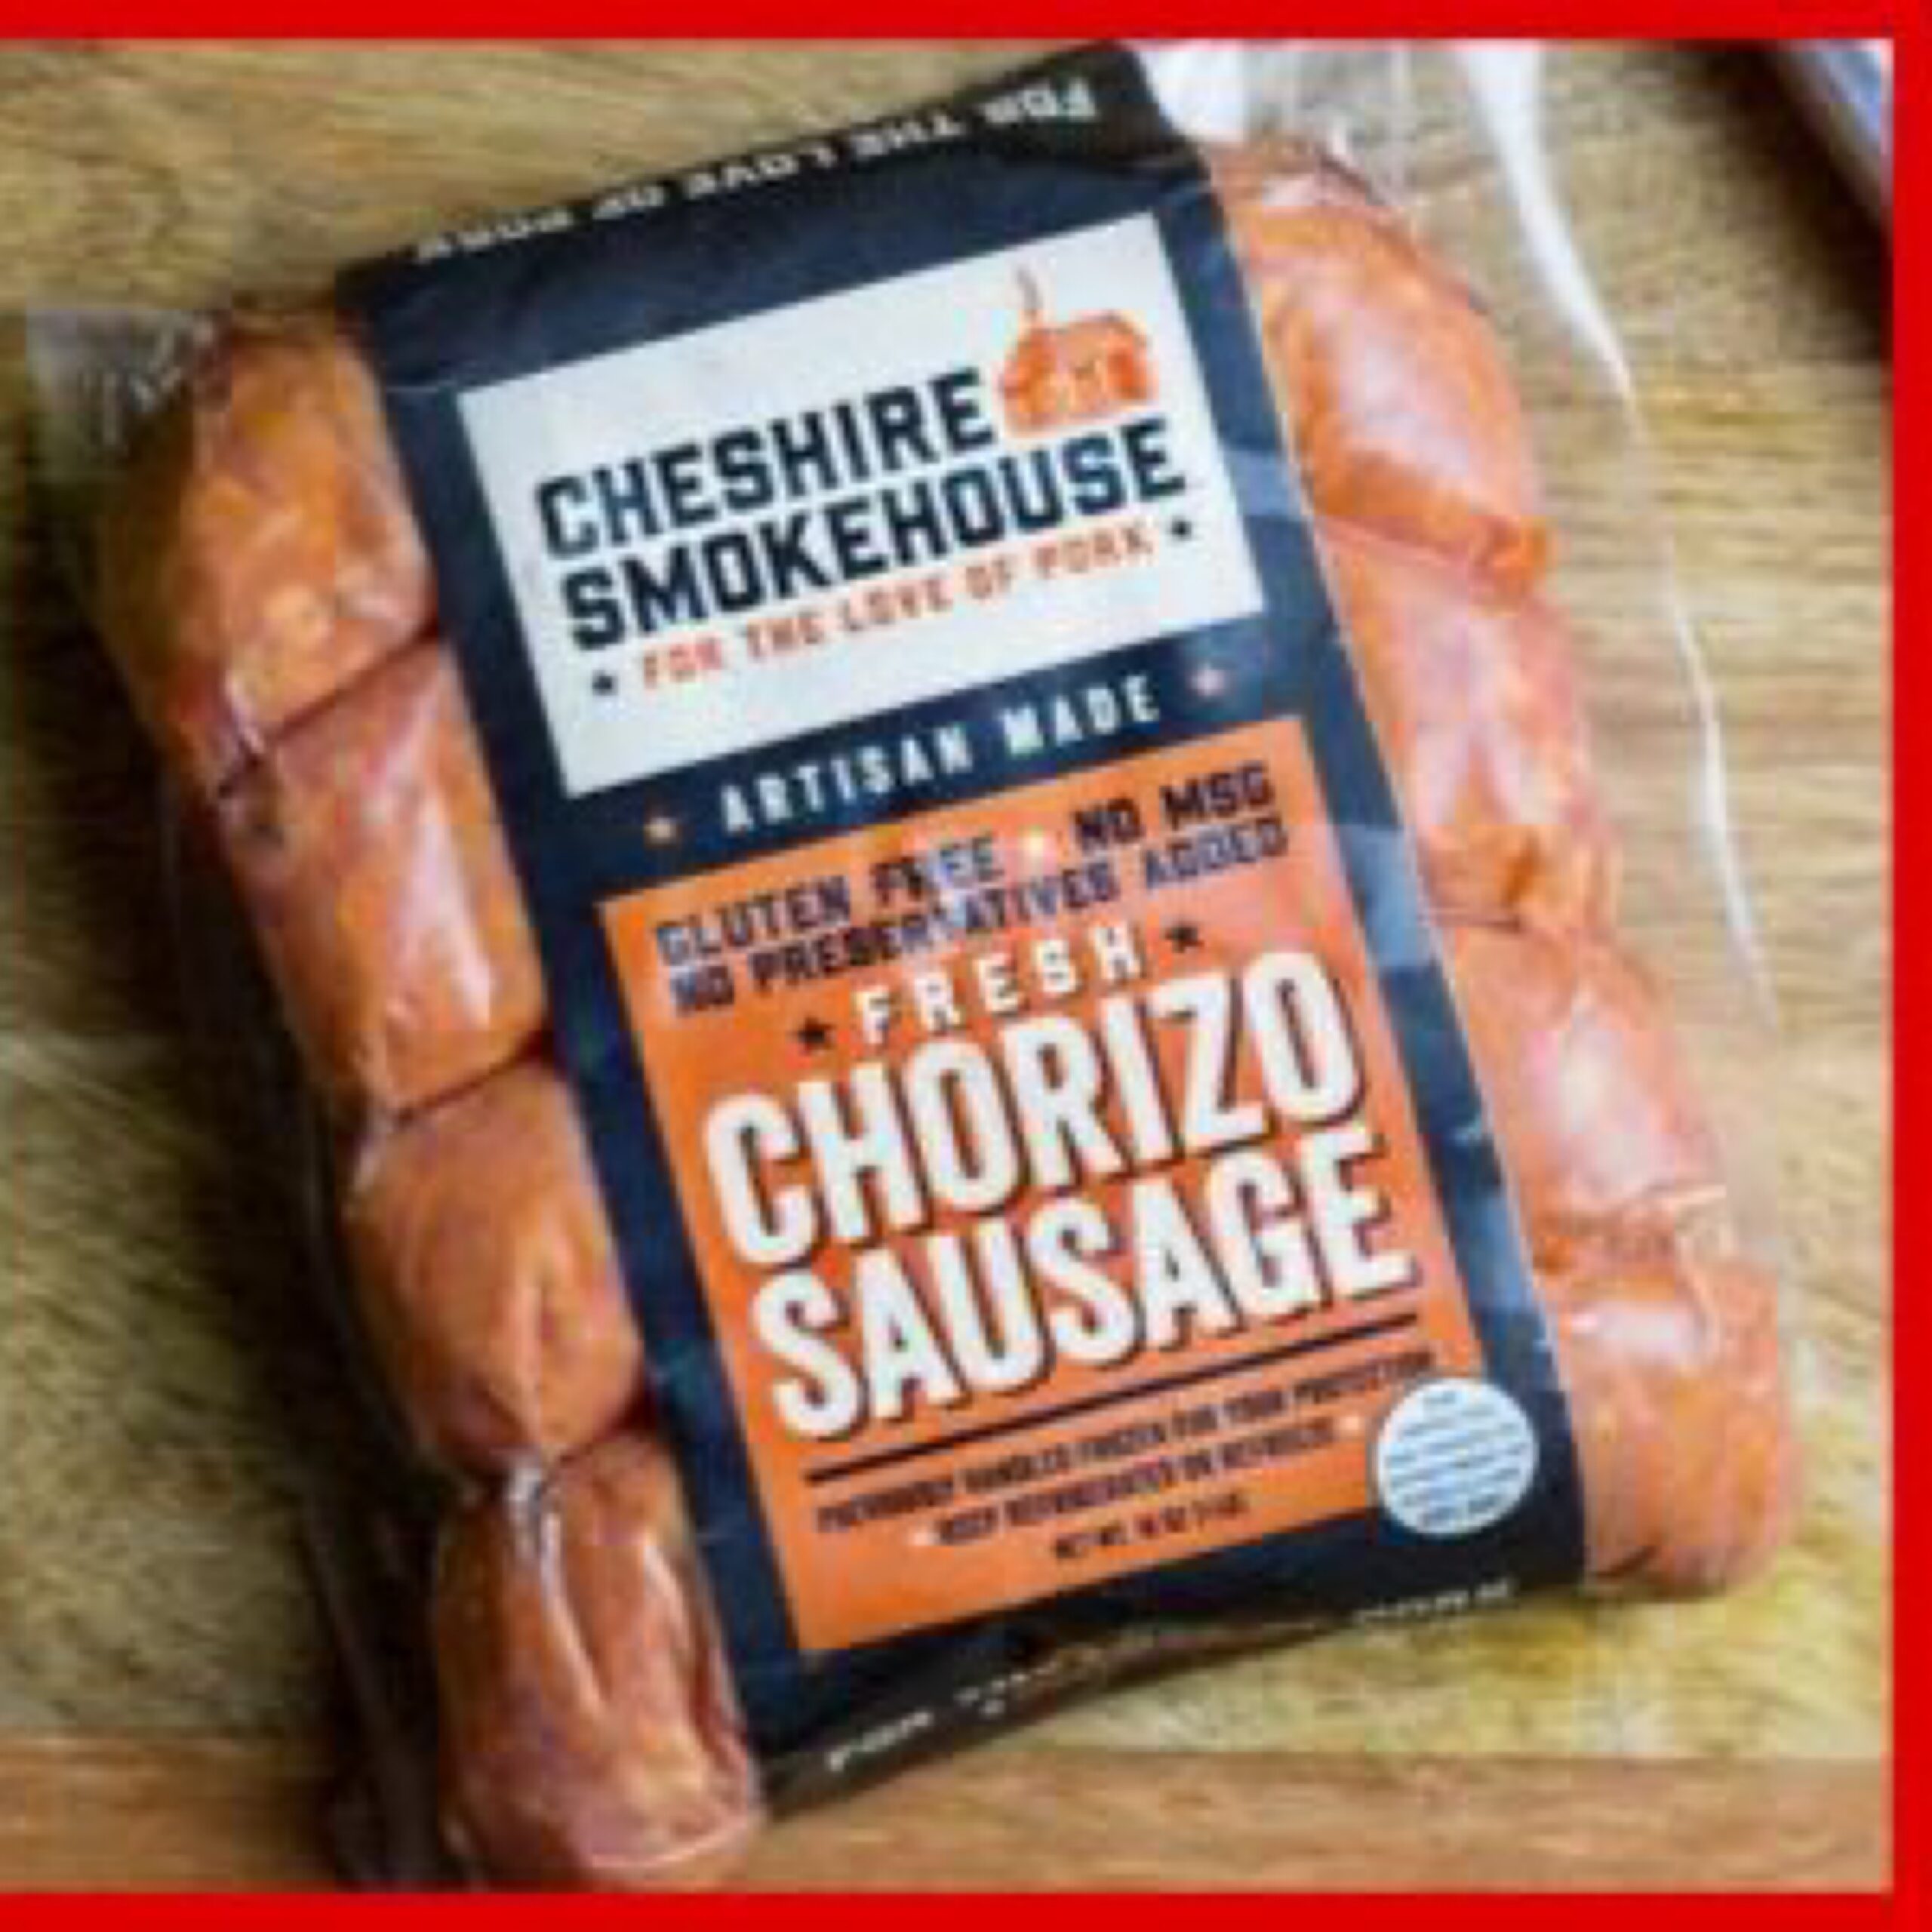 Cheshire Pork Chorizo Sausage